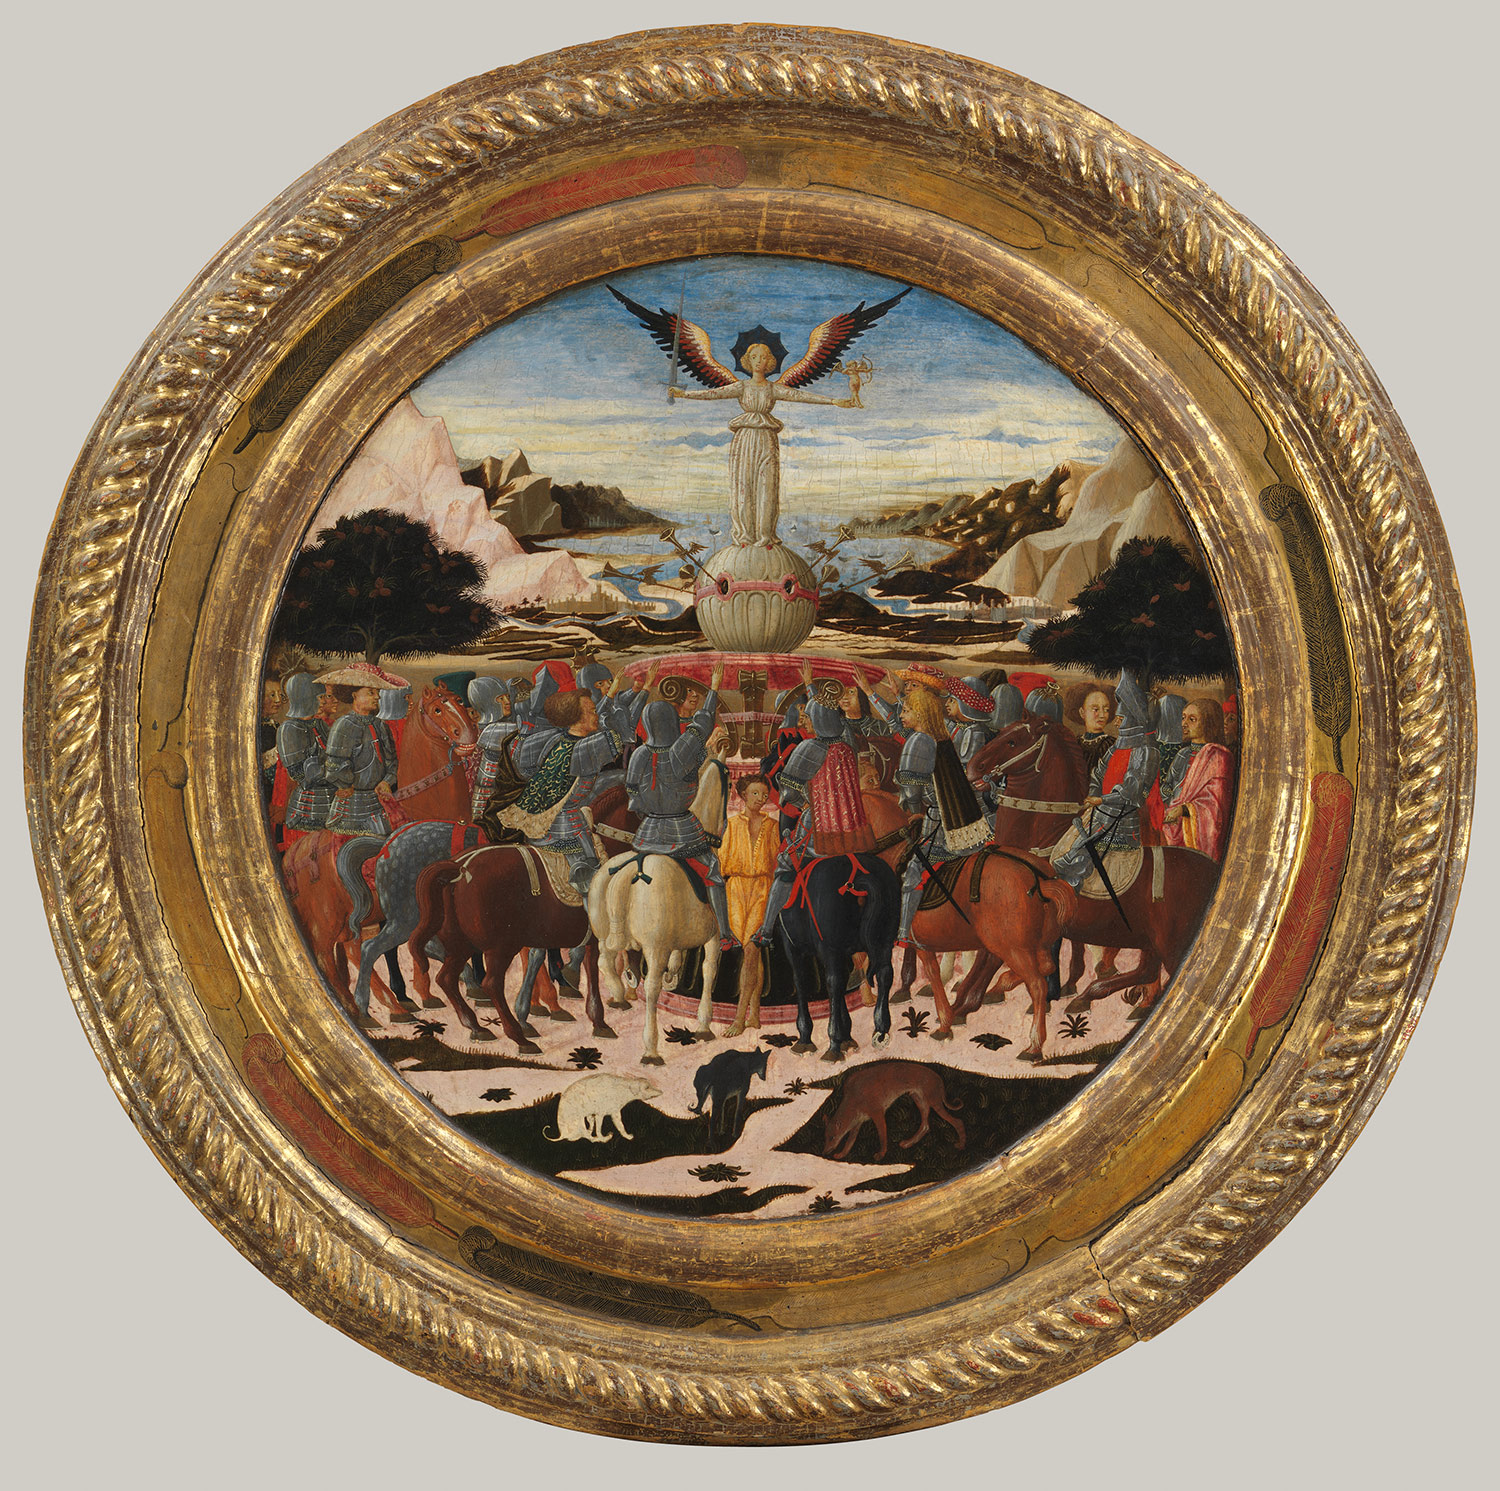 Childbirth tray desco da parto with the Triumph of Fame recto and Medici